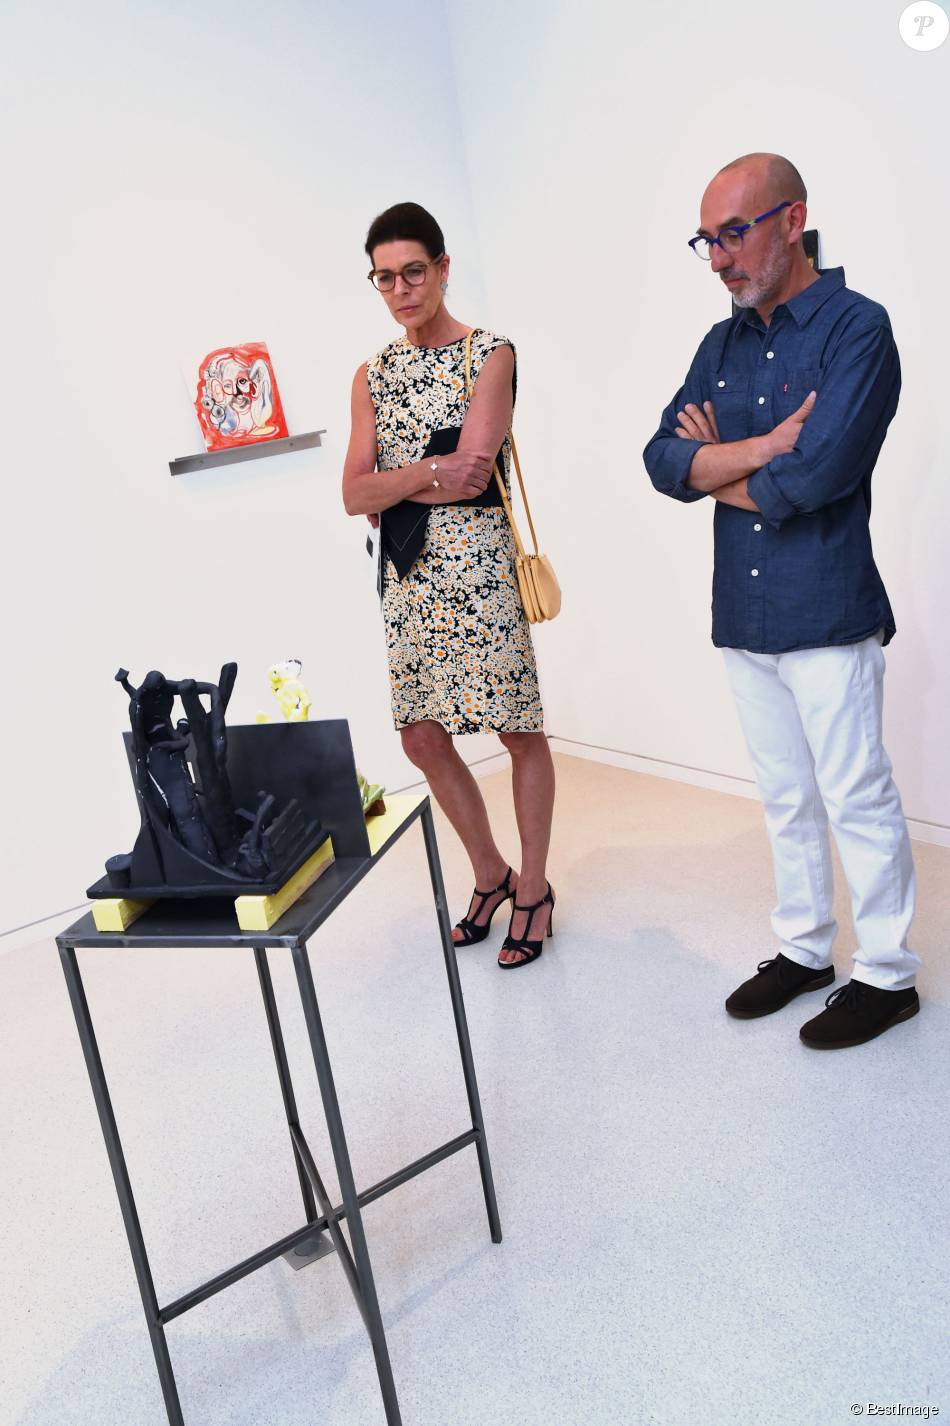  Exclusif - La princesse Caroline de Hanovre participait le 7 juillet 2015 au vernissage de la rétrospective organisée à la Villa Paloma (Nouveau Musée National de Monaco) consacrée au sculpteur et peintre italien Fausto Melotti. Son fils Andrea Casiraghi, avec son épouse Tatiana Santo Domingo, y prenaient également part. 